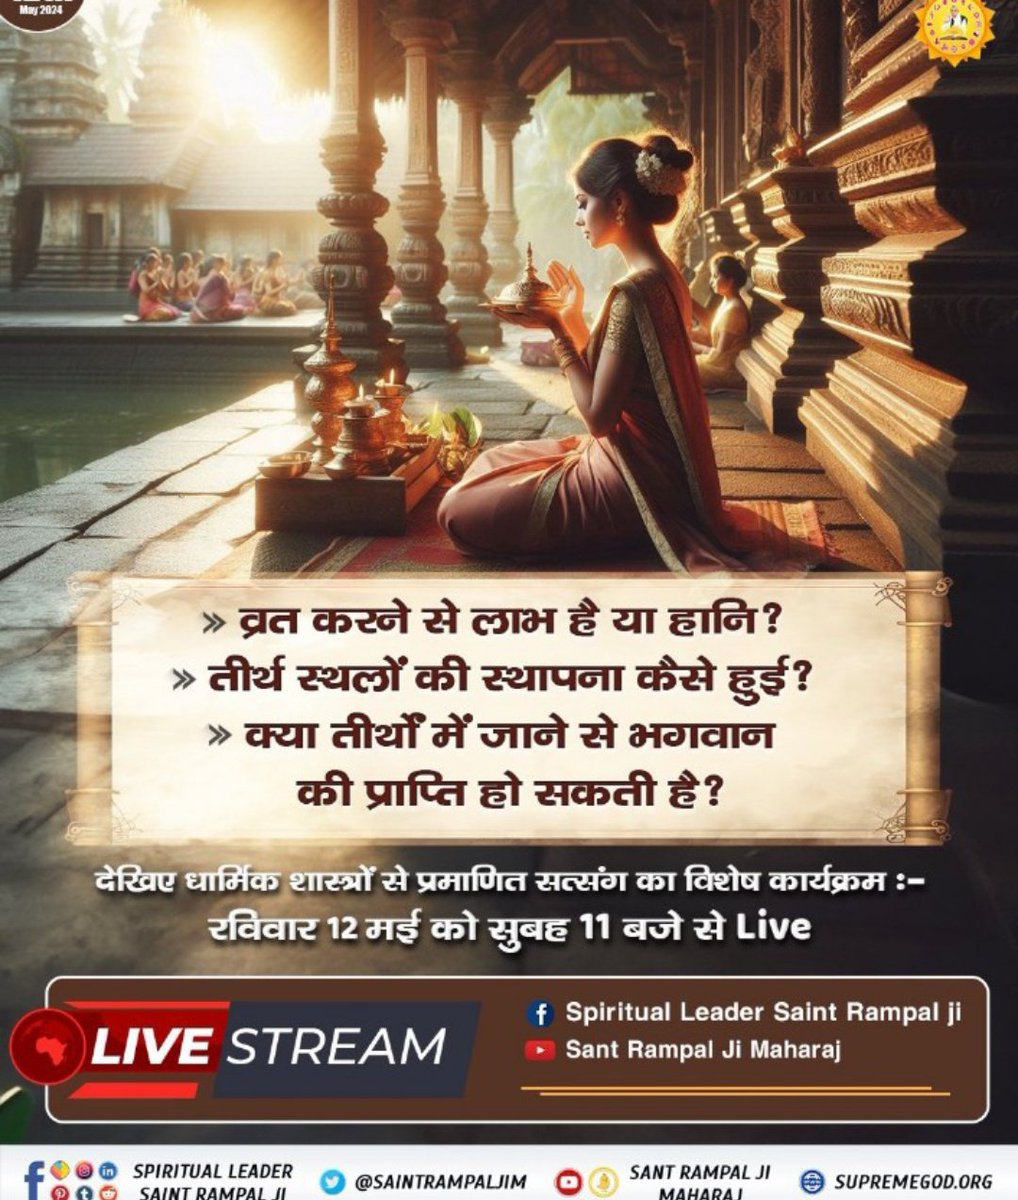 #SUNDAYSPECIALSATSANG
🌉
👉Sant Rampal Ji Maharaj aap 
⤵️
व्रत करने से लाभ है या हानि?
तीर्थ स्थलों की स्थापना कैसे हुई?
↪️क्या तीर्थों में जाने से भगवान की प्राप्ति हो सकती है?

देखिए धार्मिक शास्त्रों से प्रमाणित सत्संग का विशेष कार्यक्रम :-
रविवार 12 मई को सुबह 11 बजे से Live